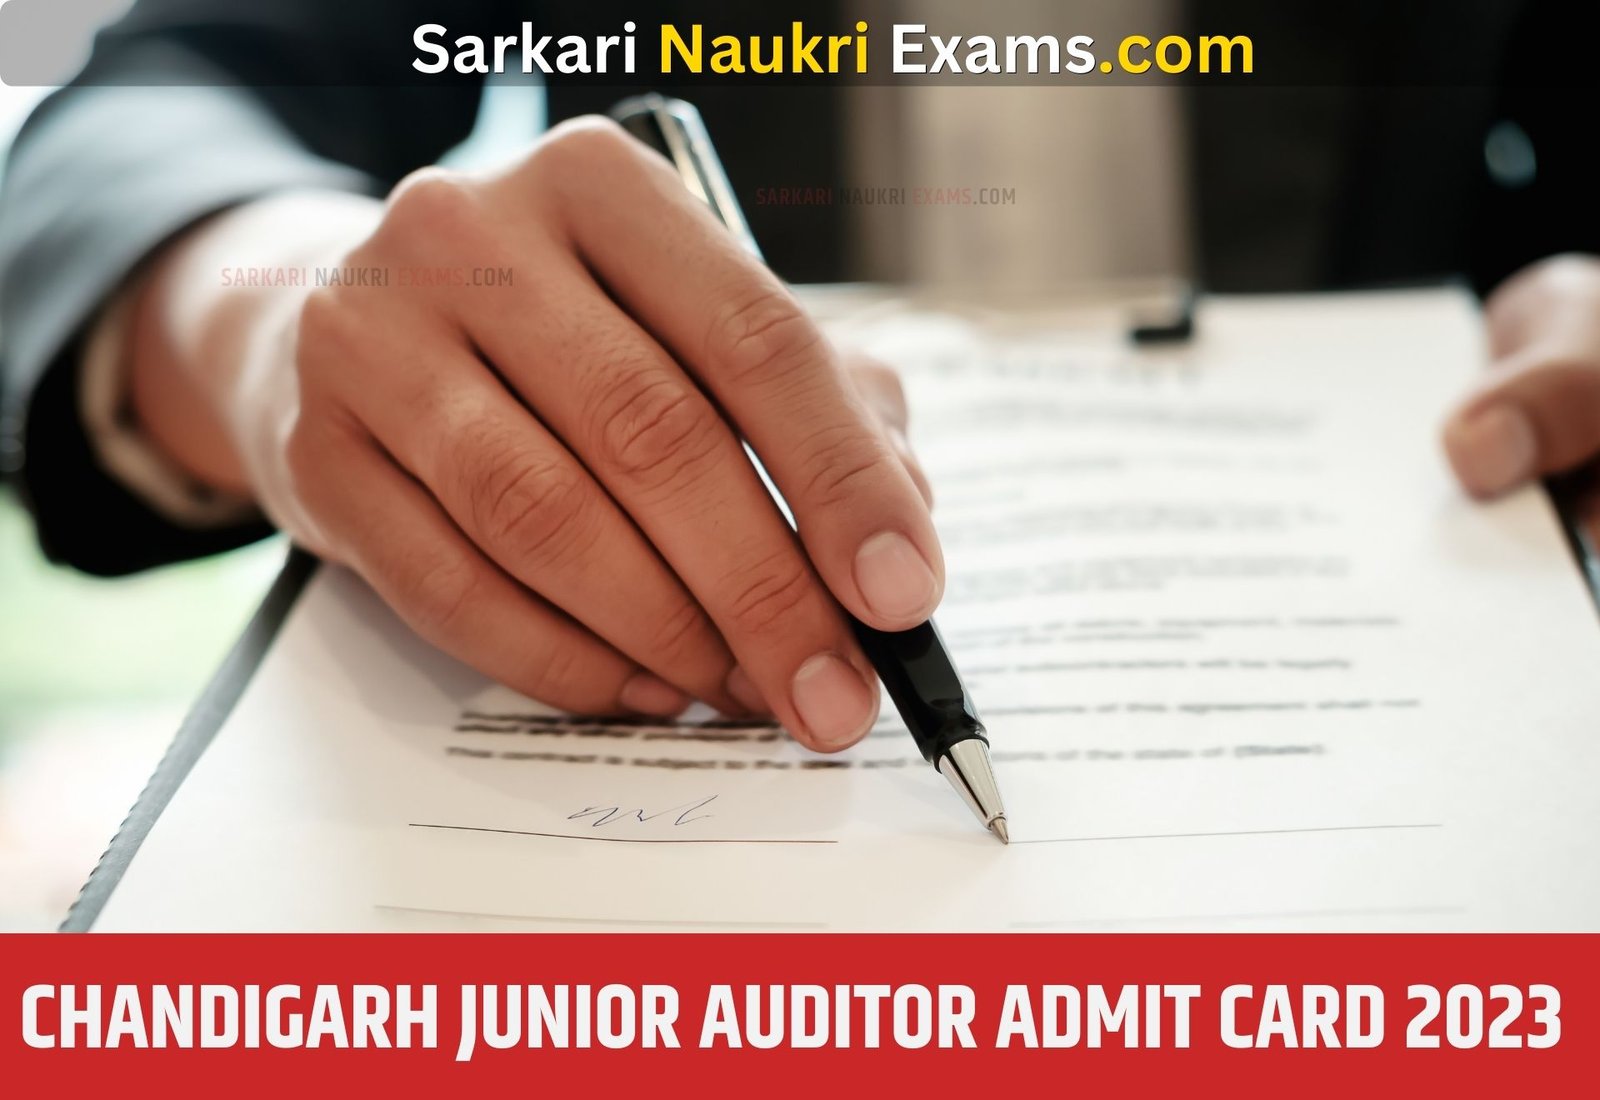 Chandigarh Junior Auditor Admit Card 2023 | Download Link, [Exam Date]